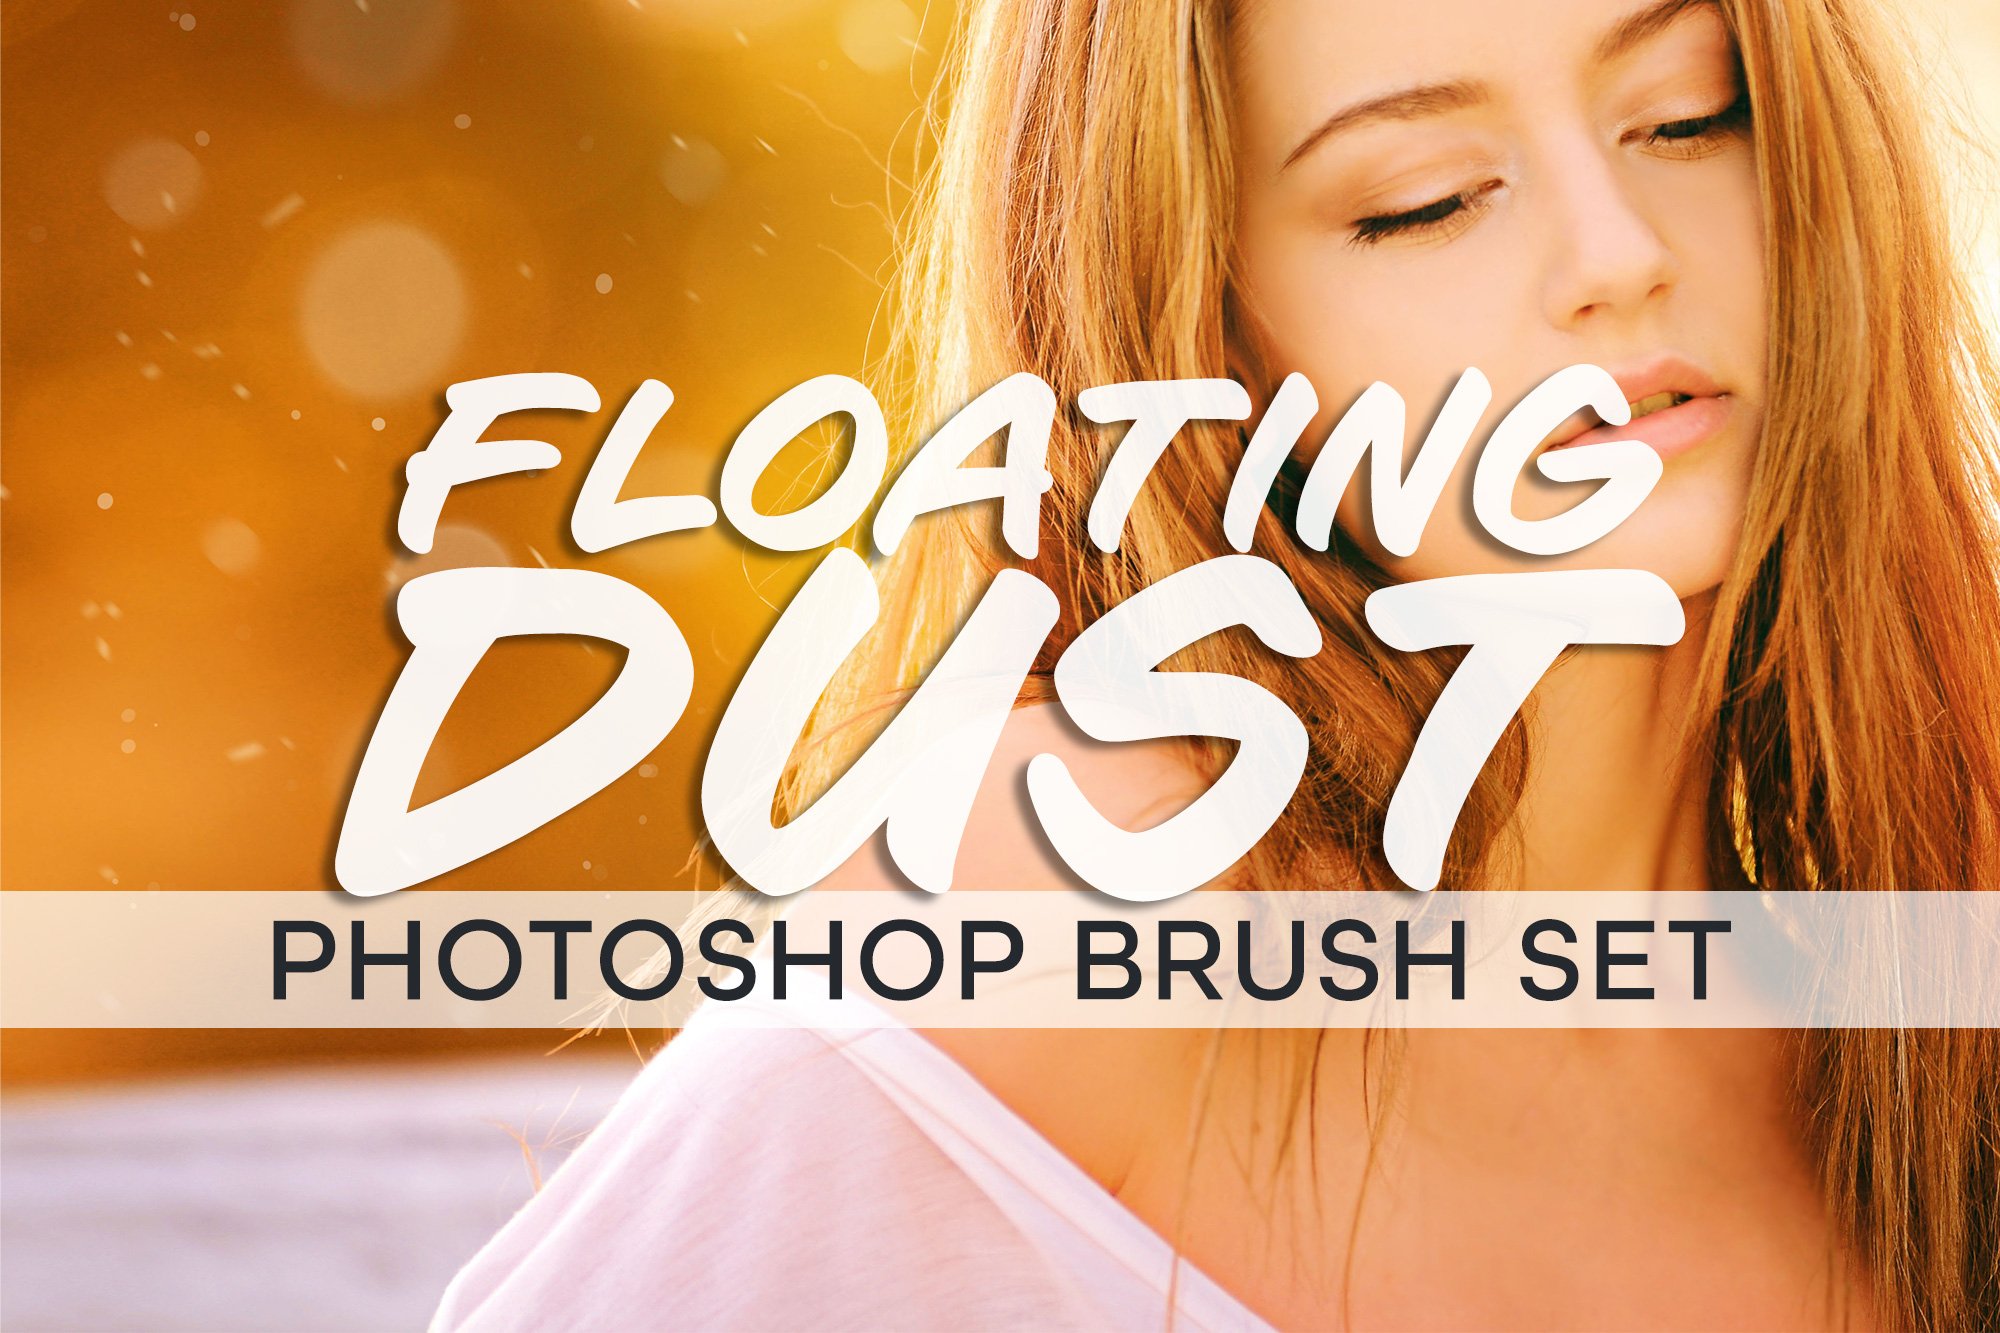 23 Floating Dust Photoshop Brush Setcover image.